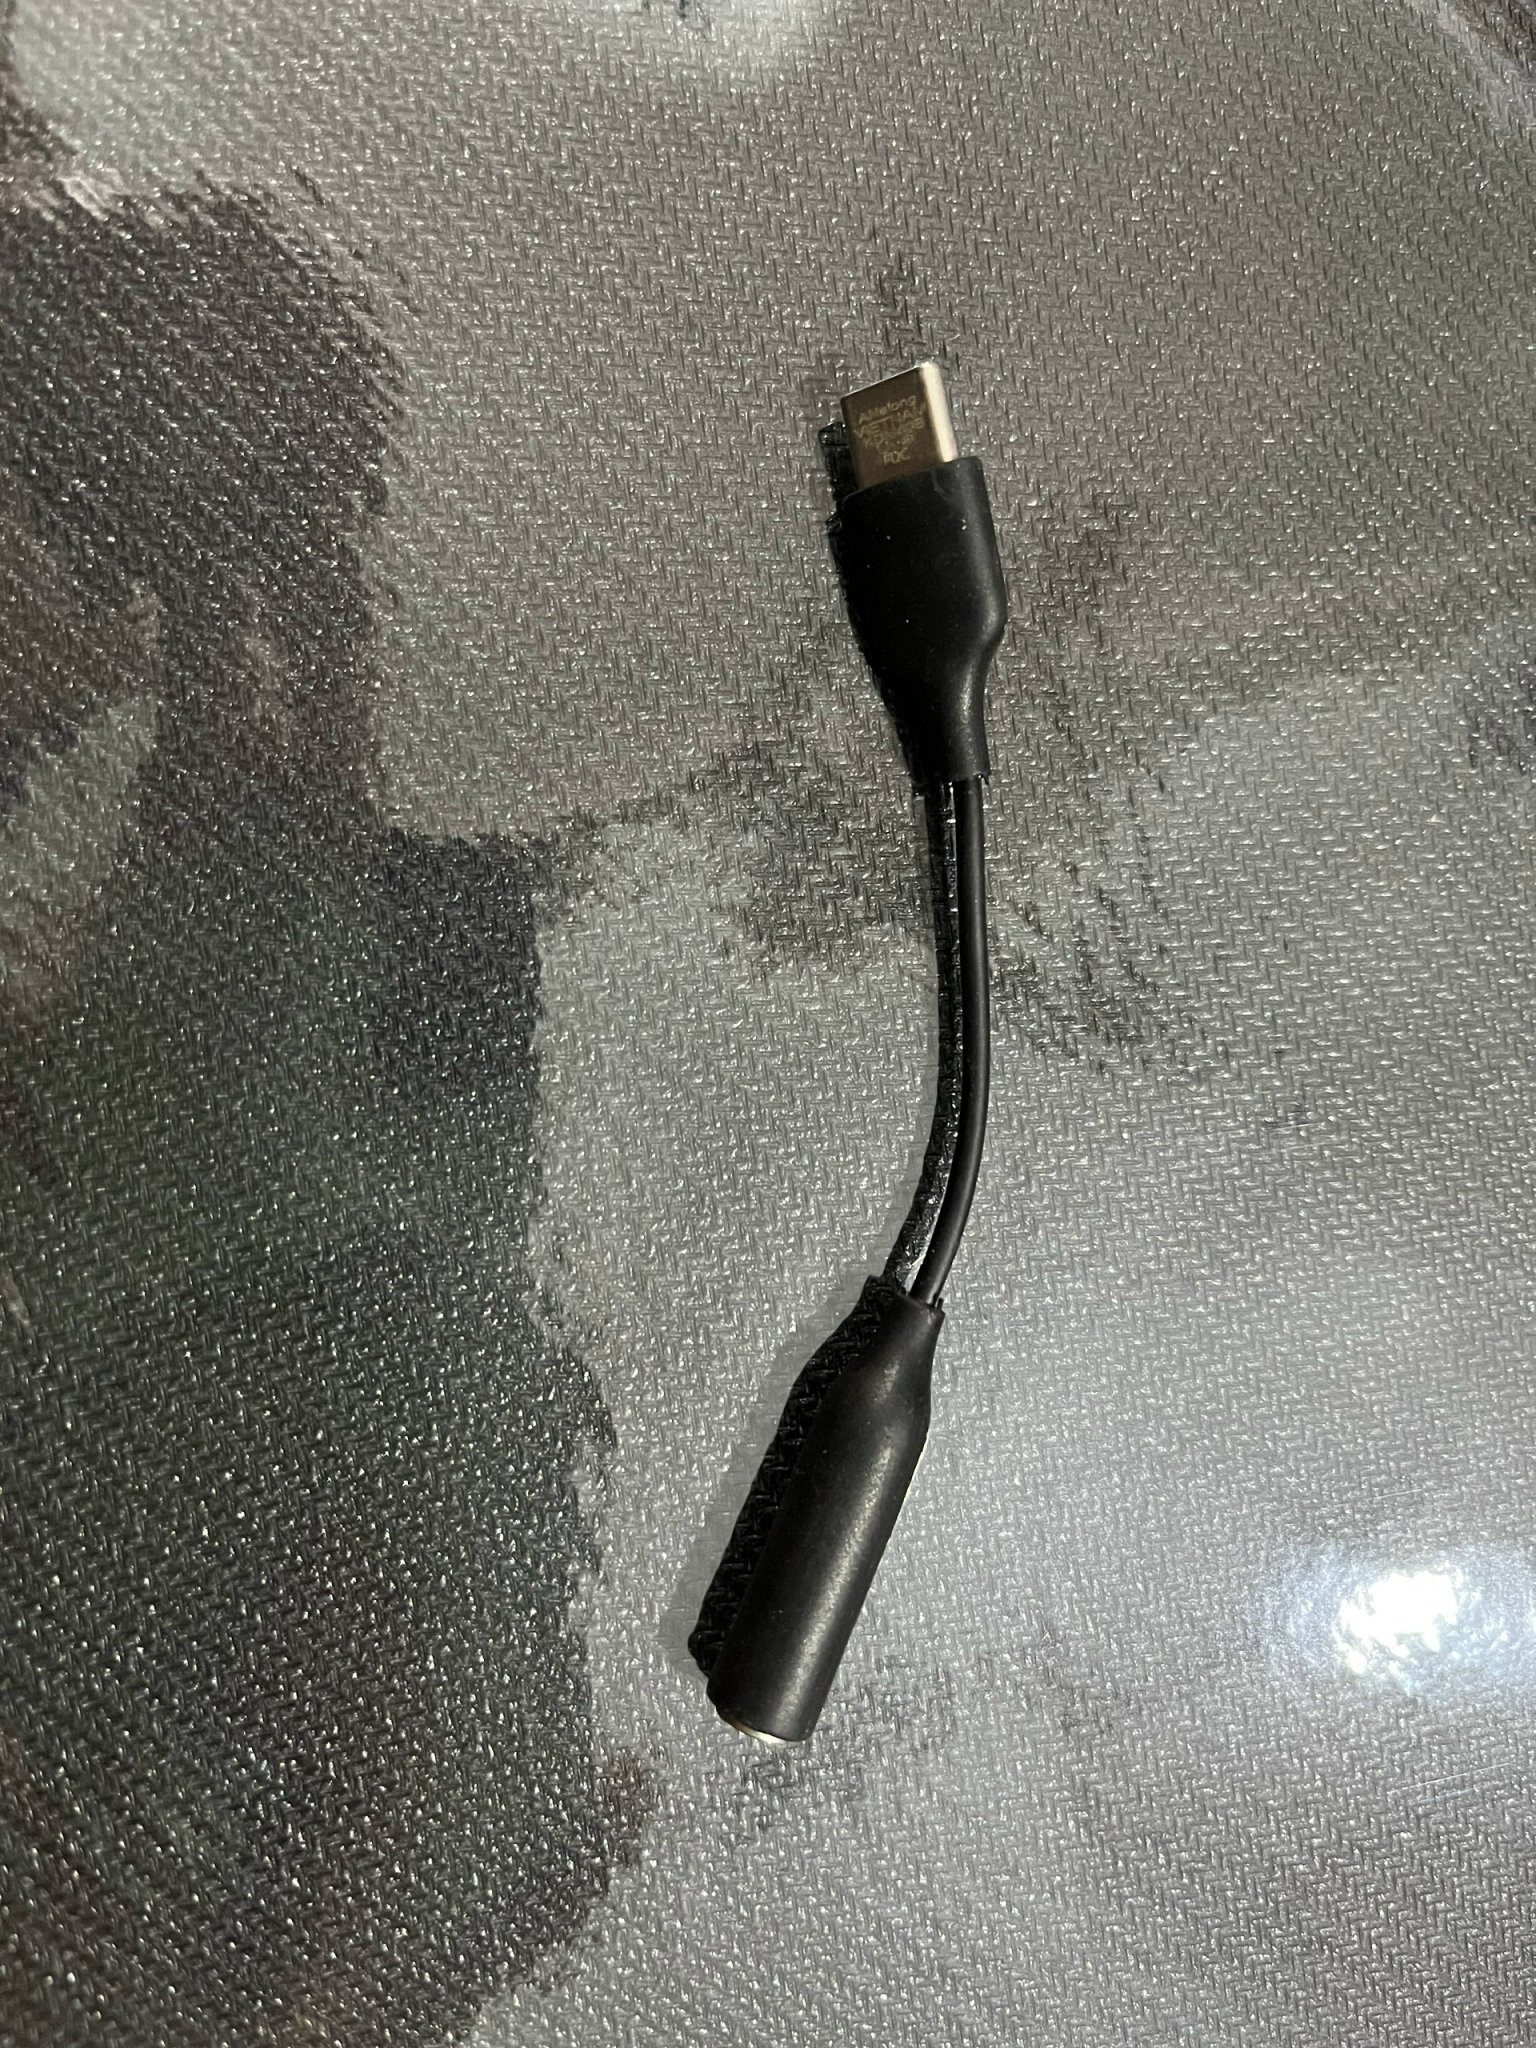 Jack chuyển tai nghe từ USB-C sang 3,5 mm 